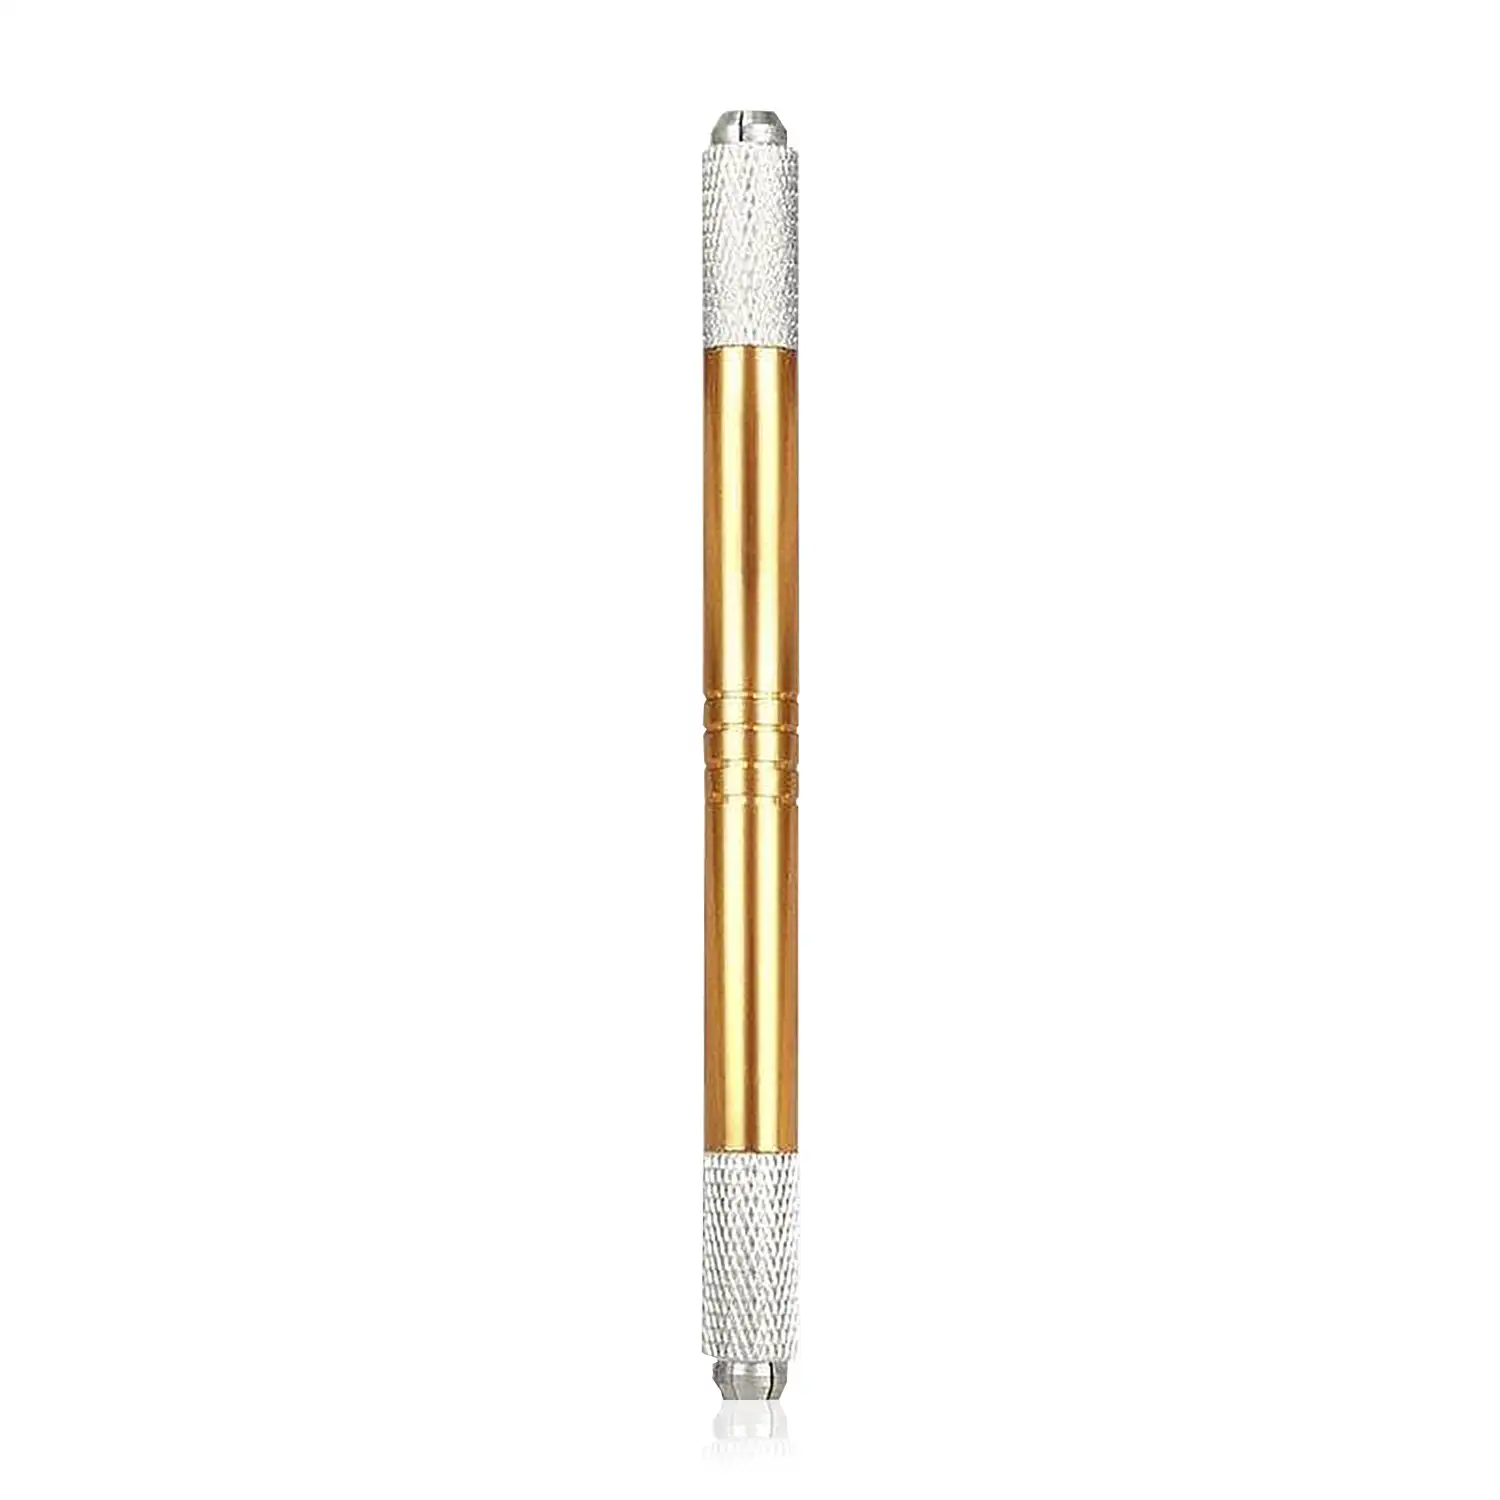 Pen de microblading, lápiz de micropigmentación.